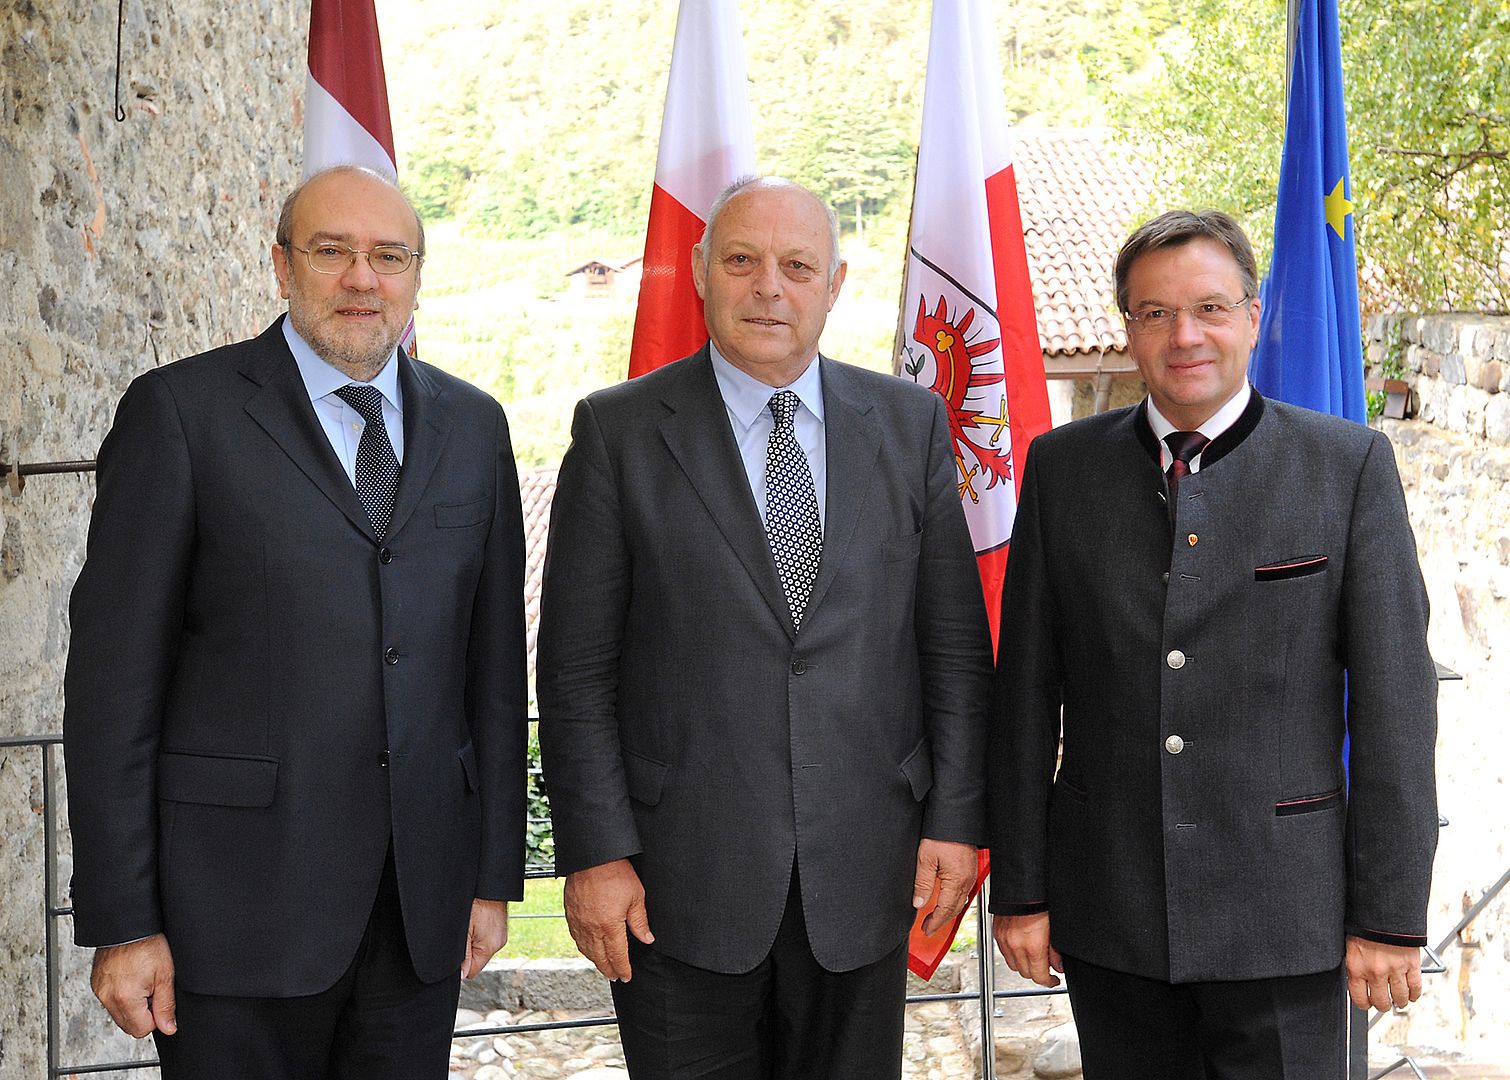 Erste Vorstandssitzung mit Lorenzo Dellai (links), Luis Durnwalder (Mitte) und Günther Platter (rechts) auf Schloss Tirol am 13. Oktober 2011